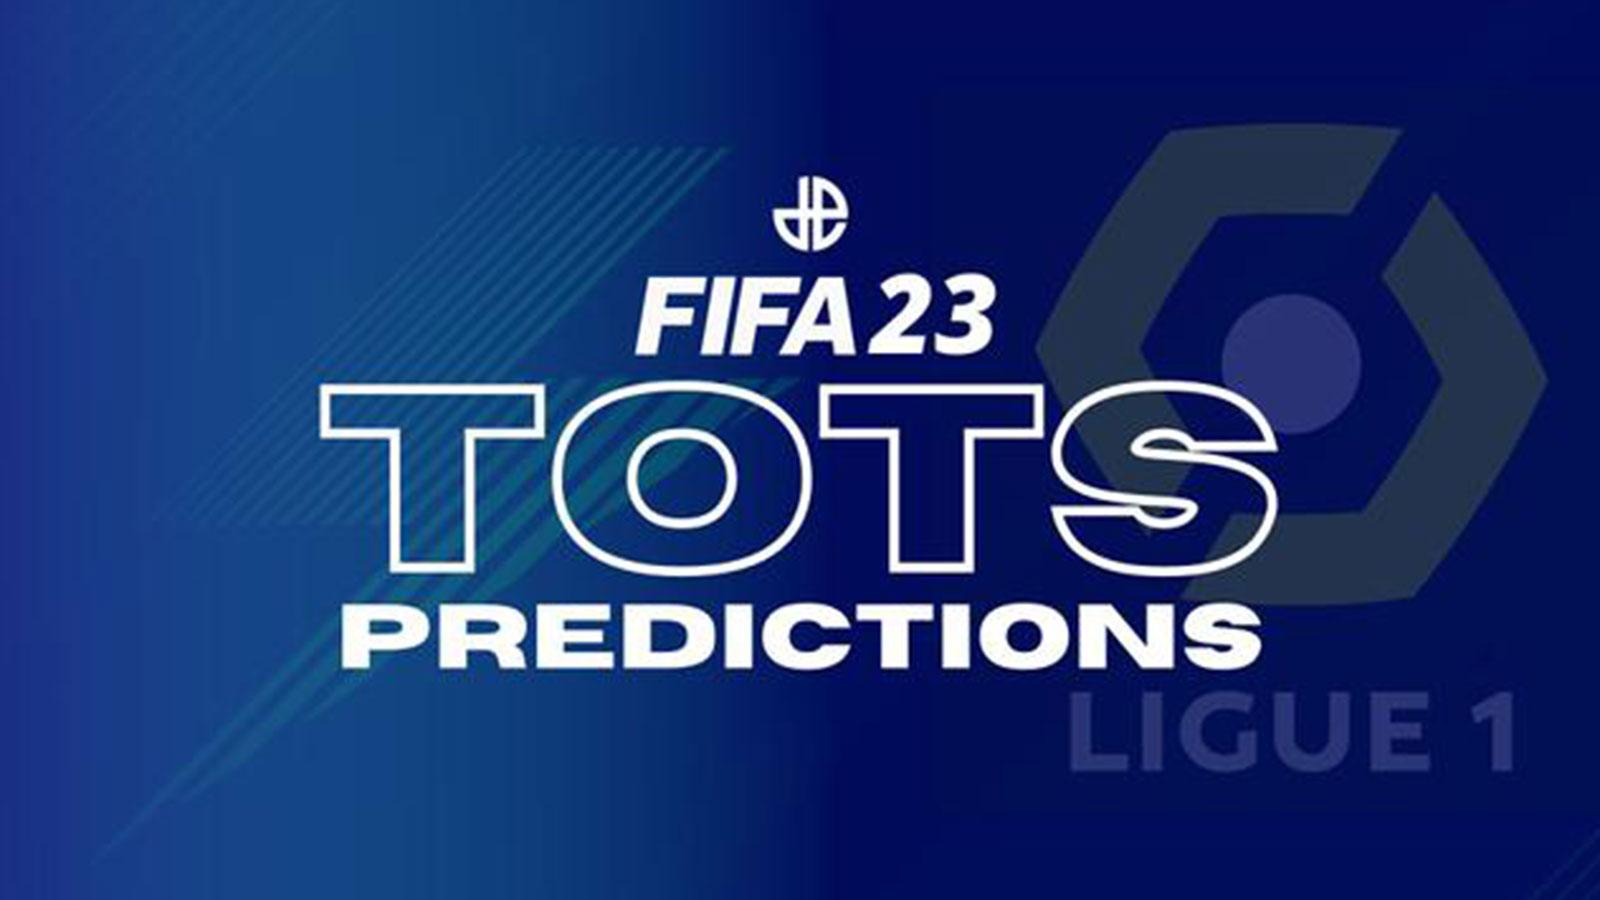 TOTS Ligue 1 FIFA 23